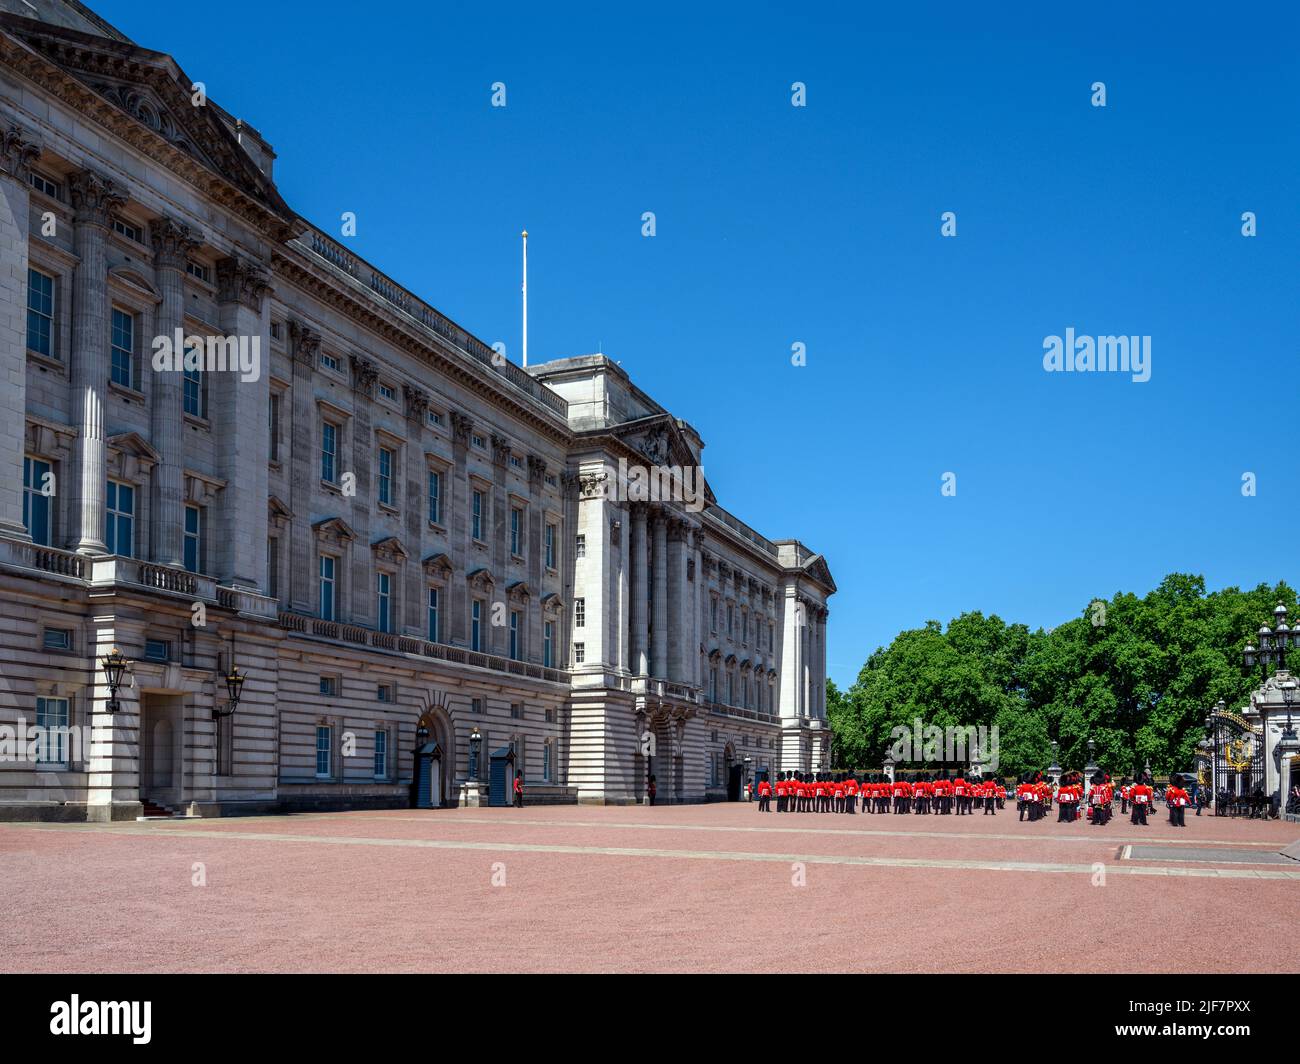 La relève de la garde à Buckingham Palace, Londres, Angleterre, Royaume-Uni Banque D'Images